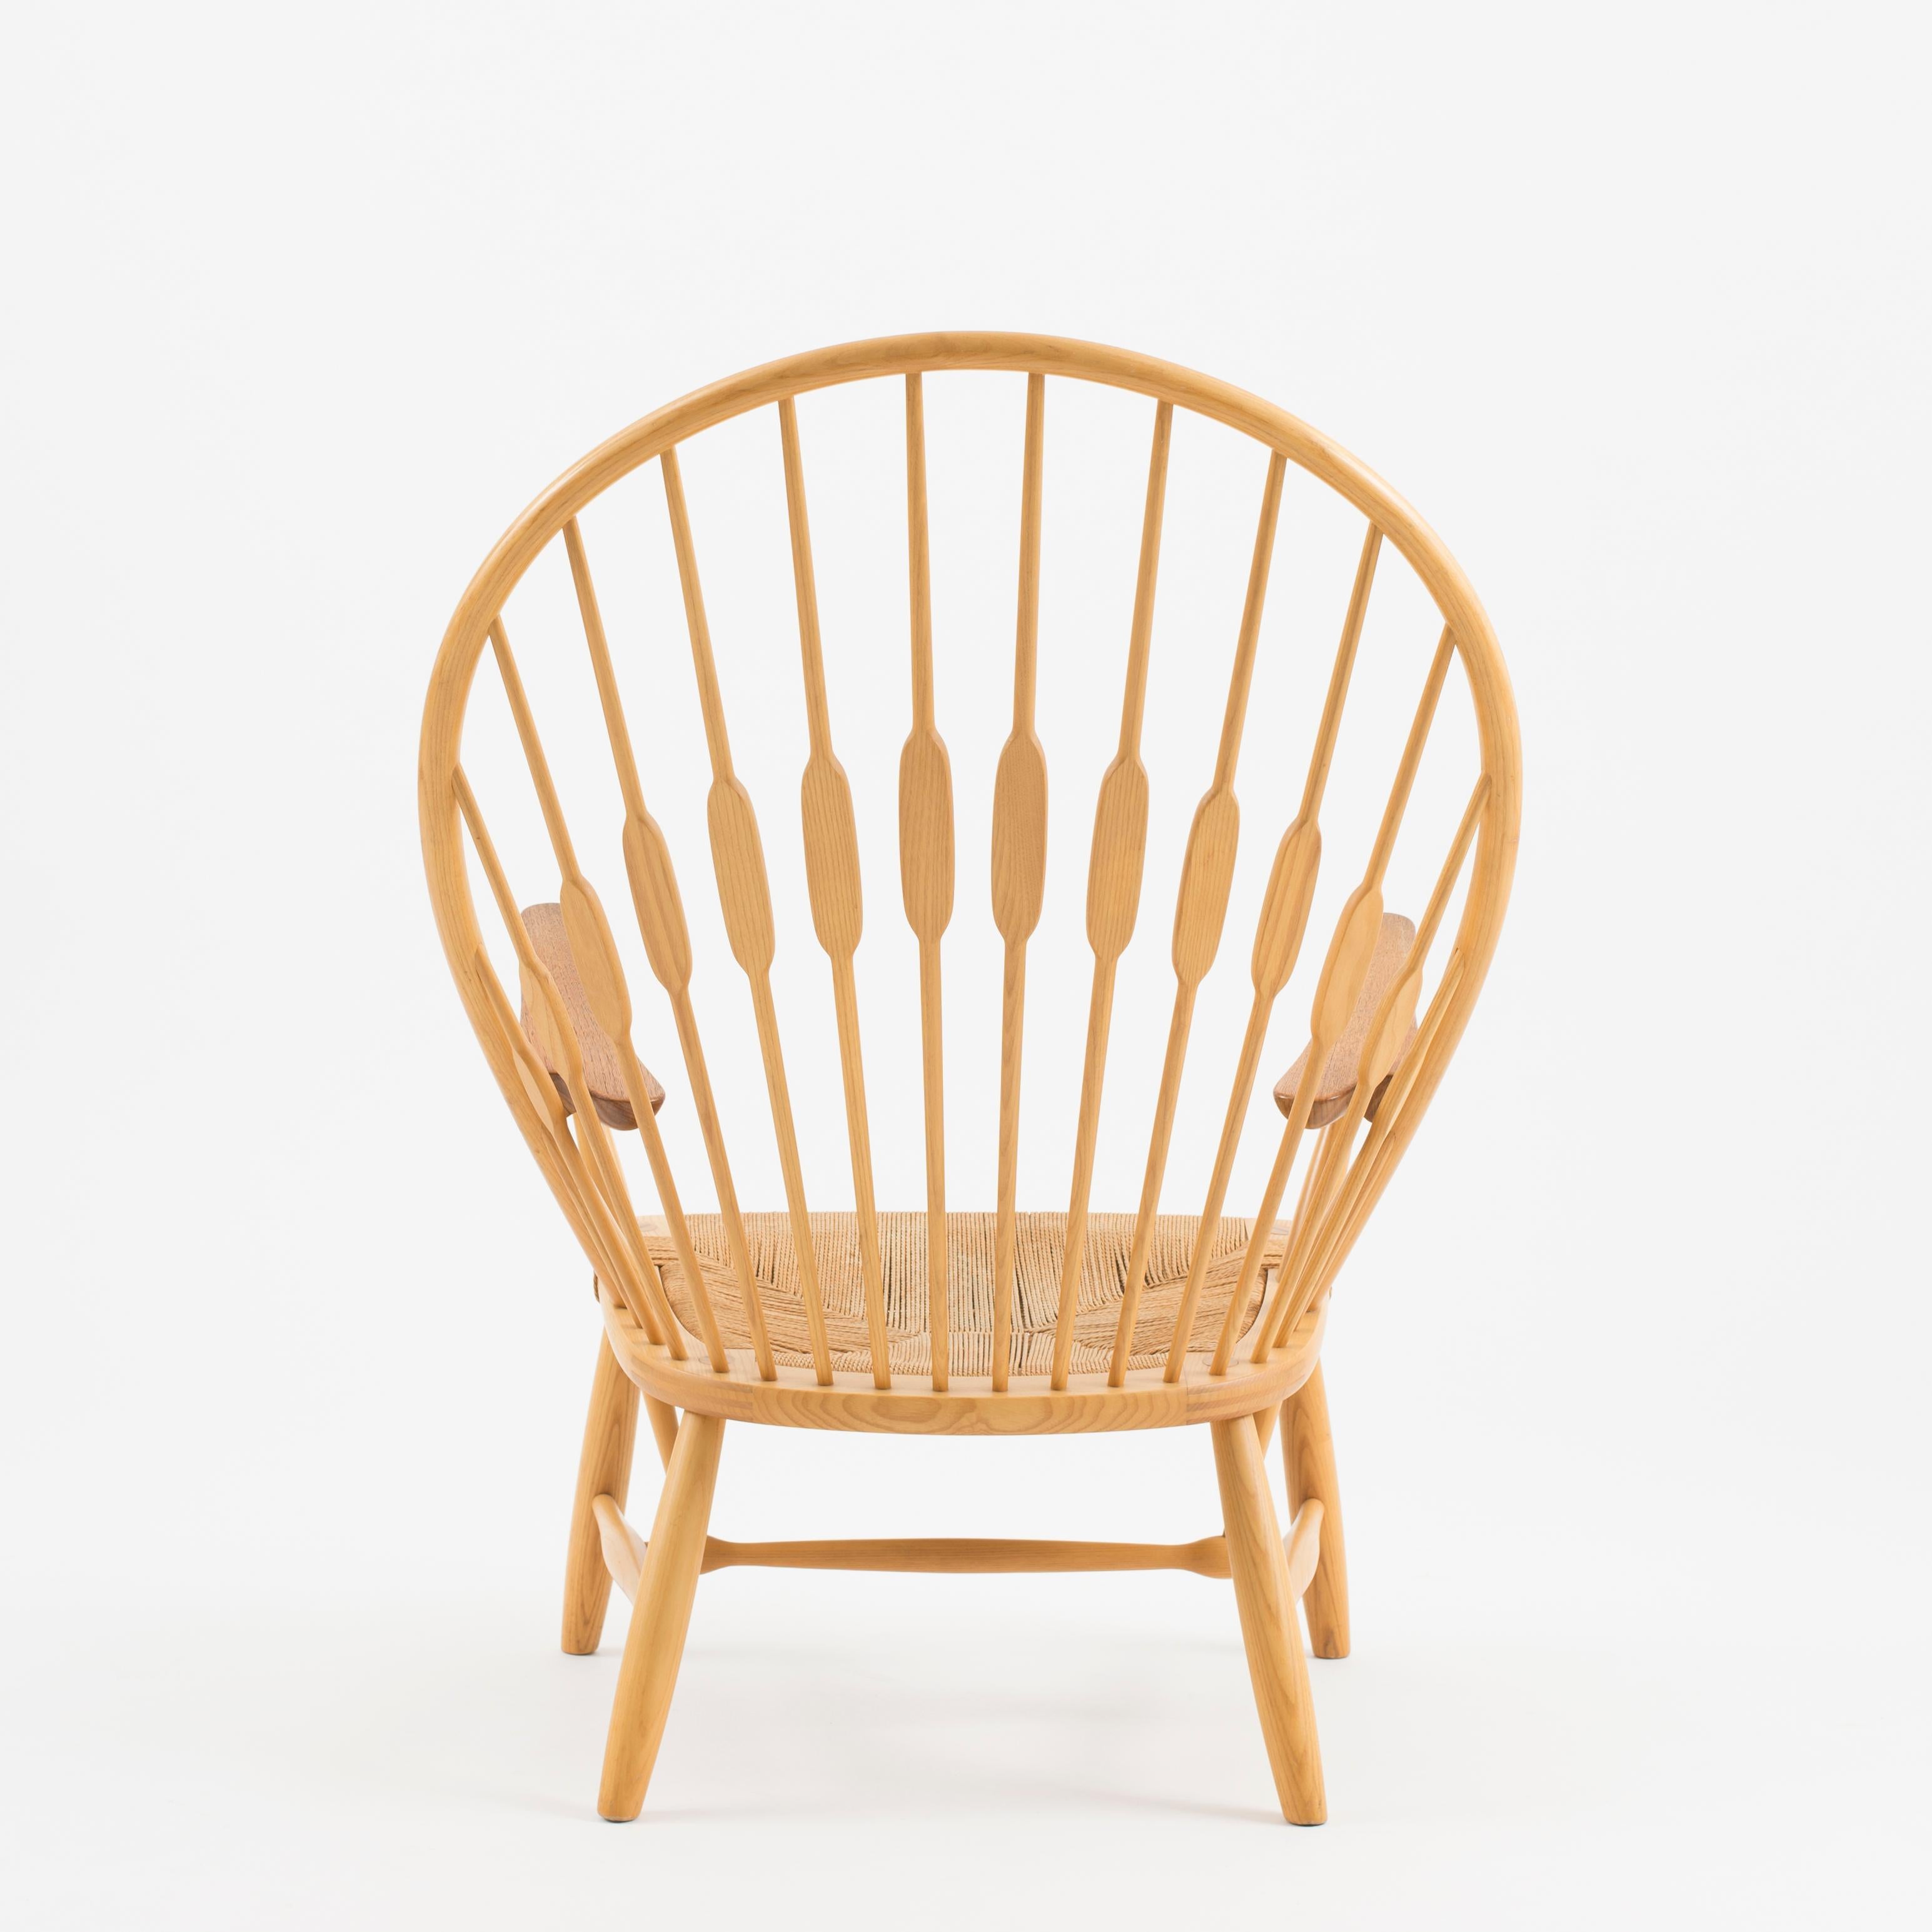 Danish Hans J. Wegner “Peacock Chair” for Johannes Hansen